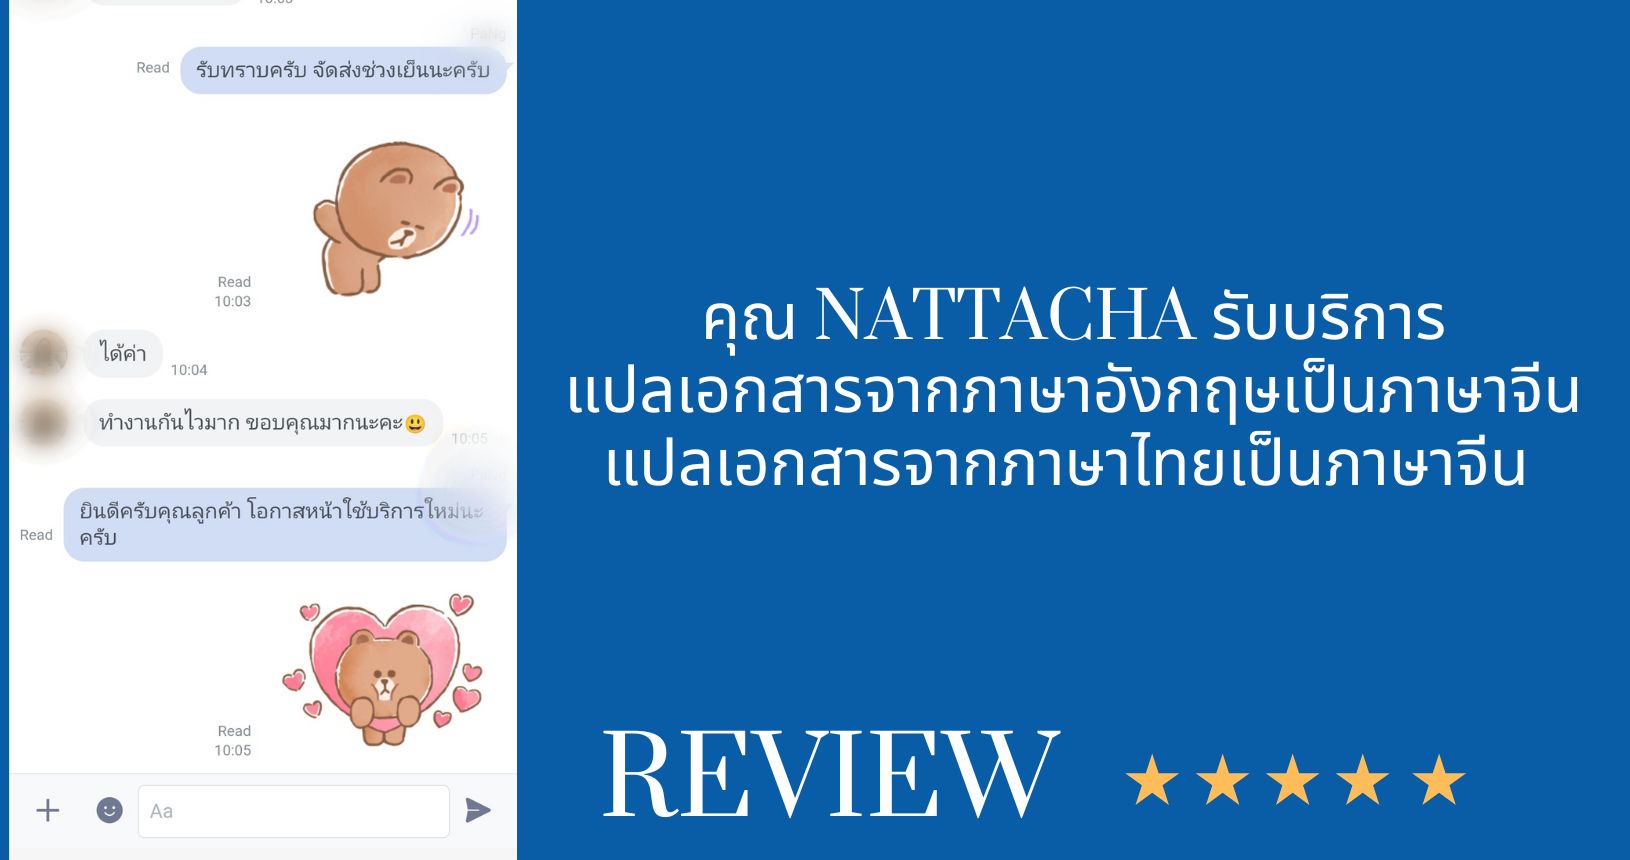 คุณ nattacha รับบริการ แปลเอกสารจากภาษาอังกฤษเป็นภาษาจีน แปลเอกสารจากภาษาไทยษเป็นภาษาจีน